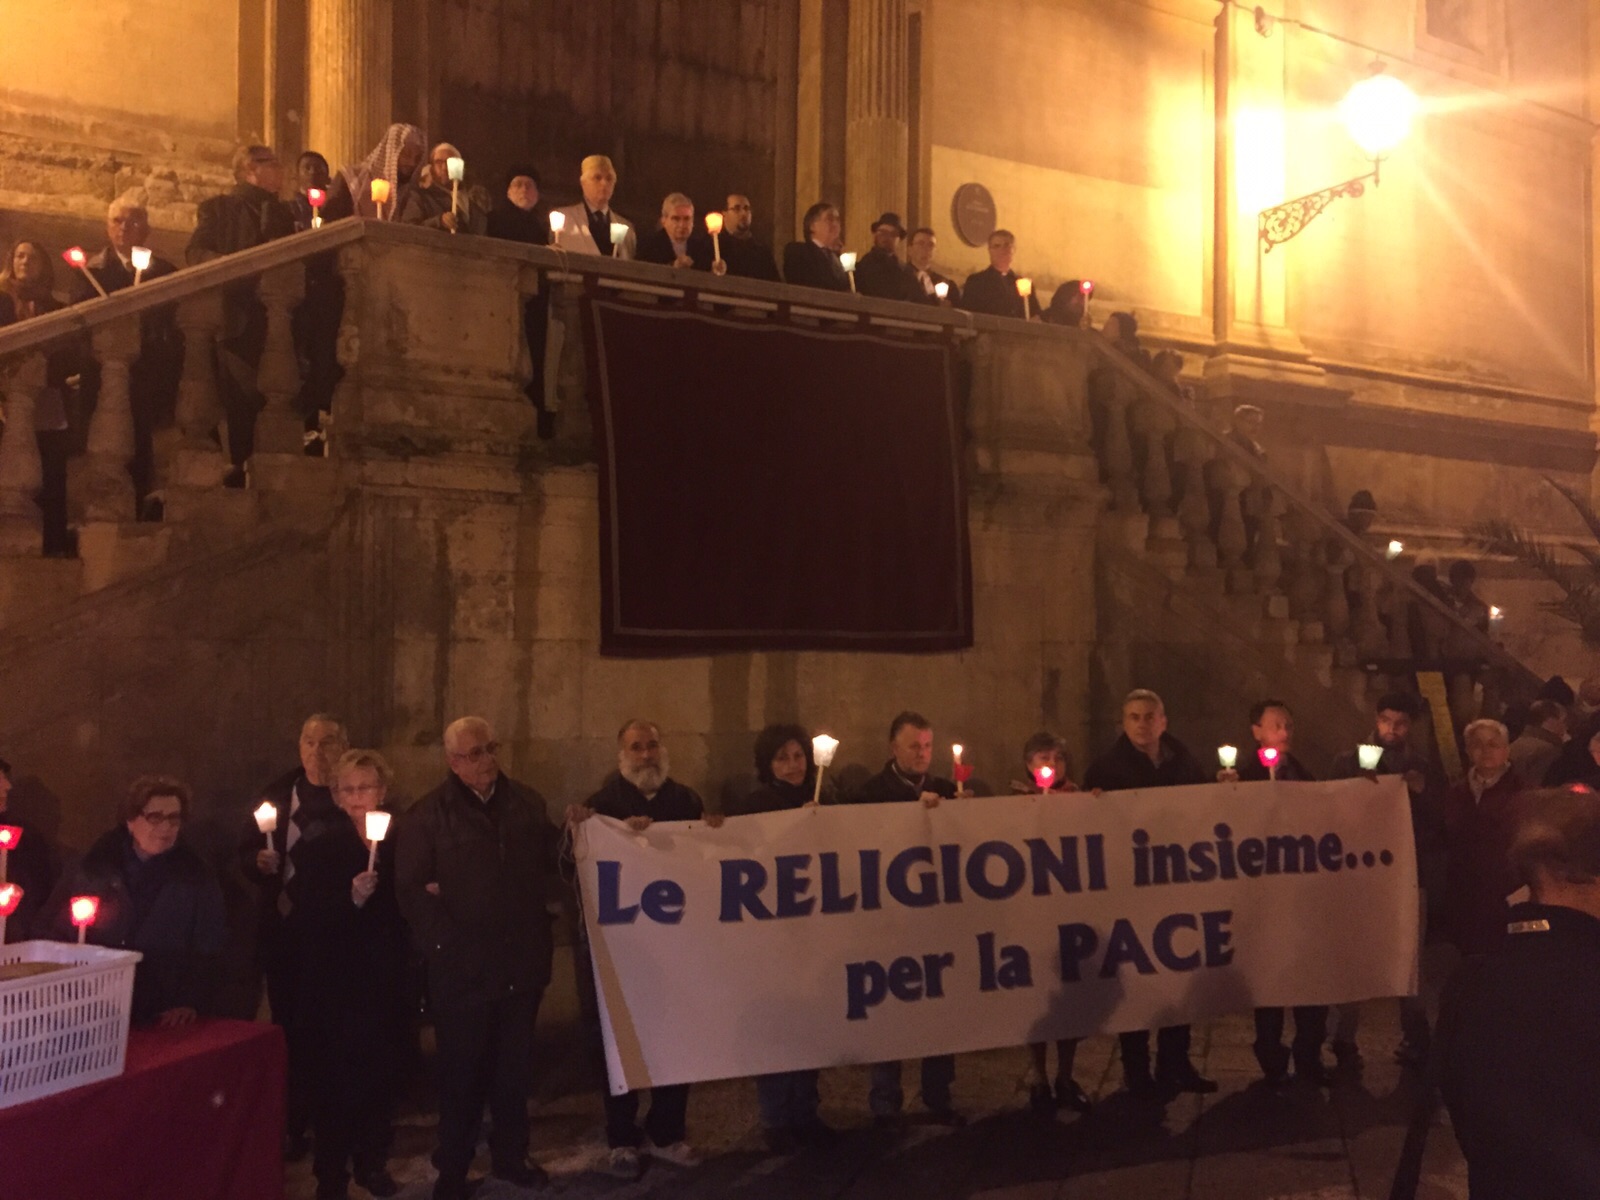 La preghiera interreligiosa per la pace: la diversità che arricchisce